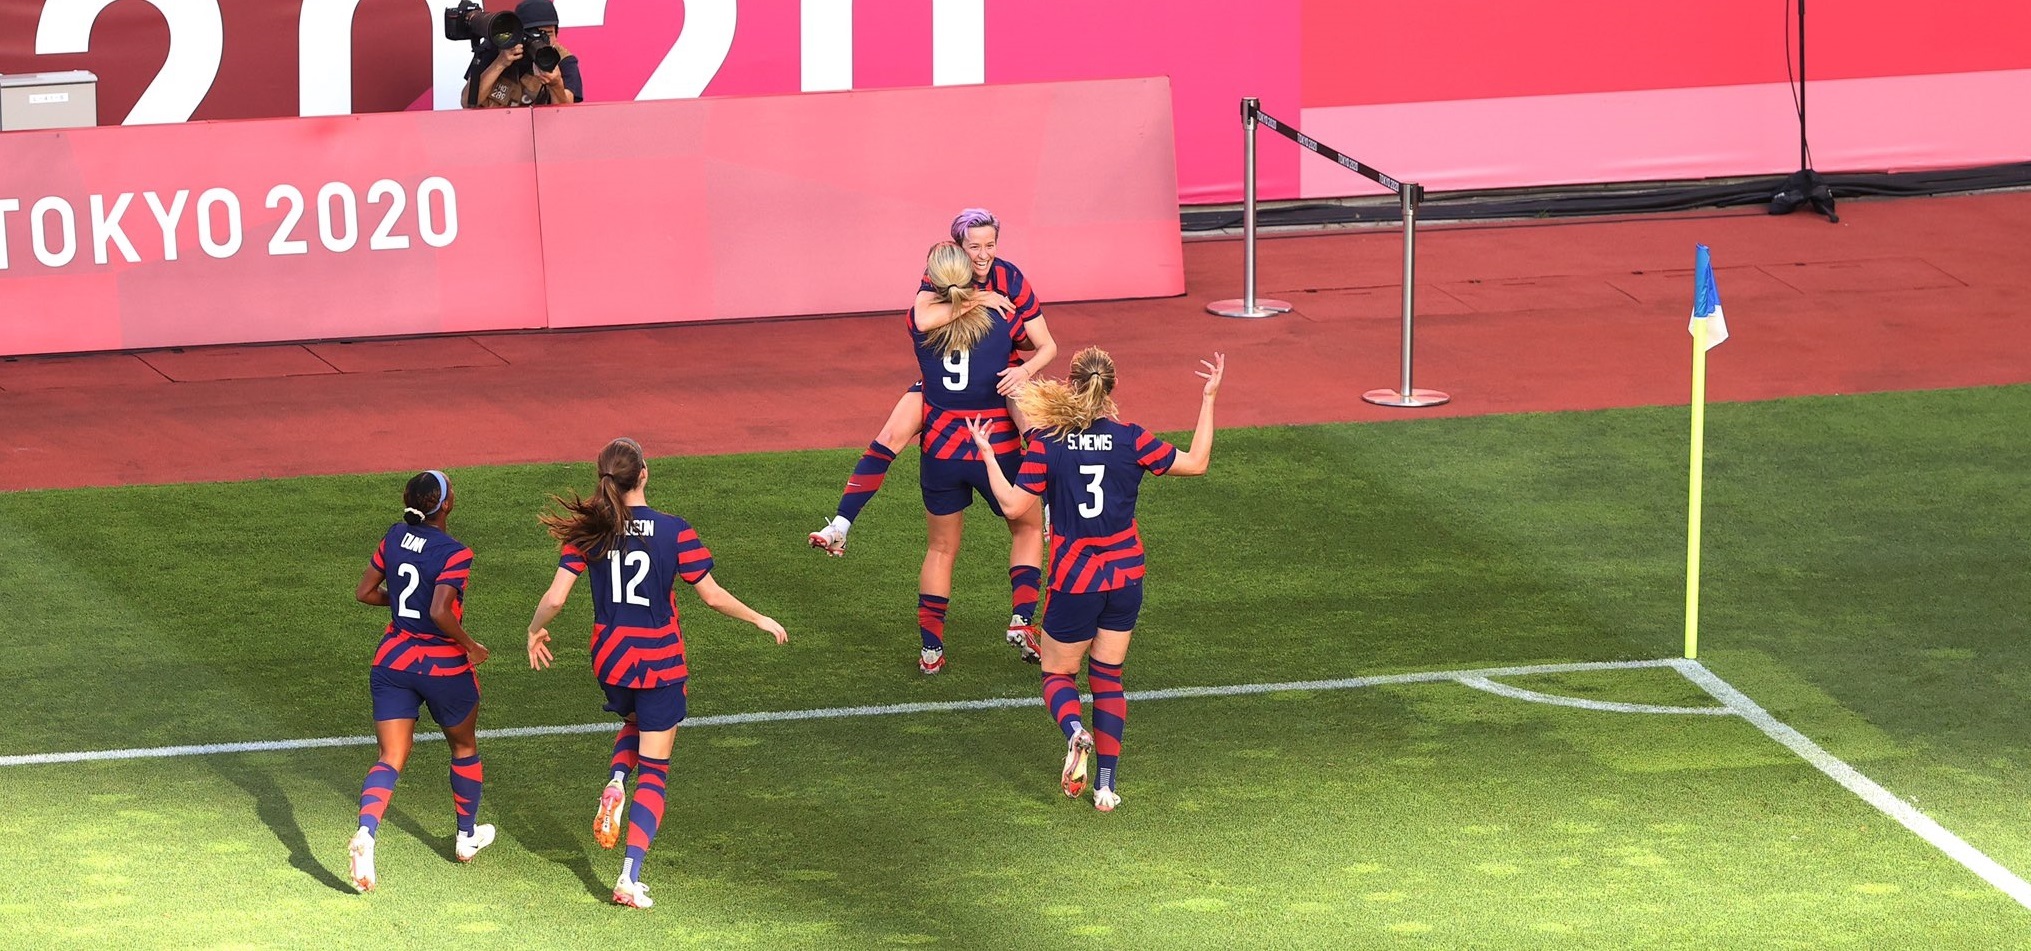 فوتبال زنان المپیک توکیو | استرالیا 2-4 آمریکا؛ یانکی ها طلا را با برنز عوض کردند